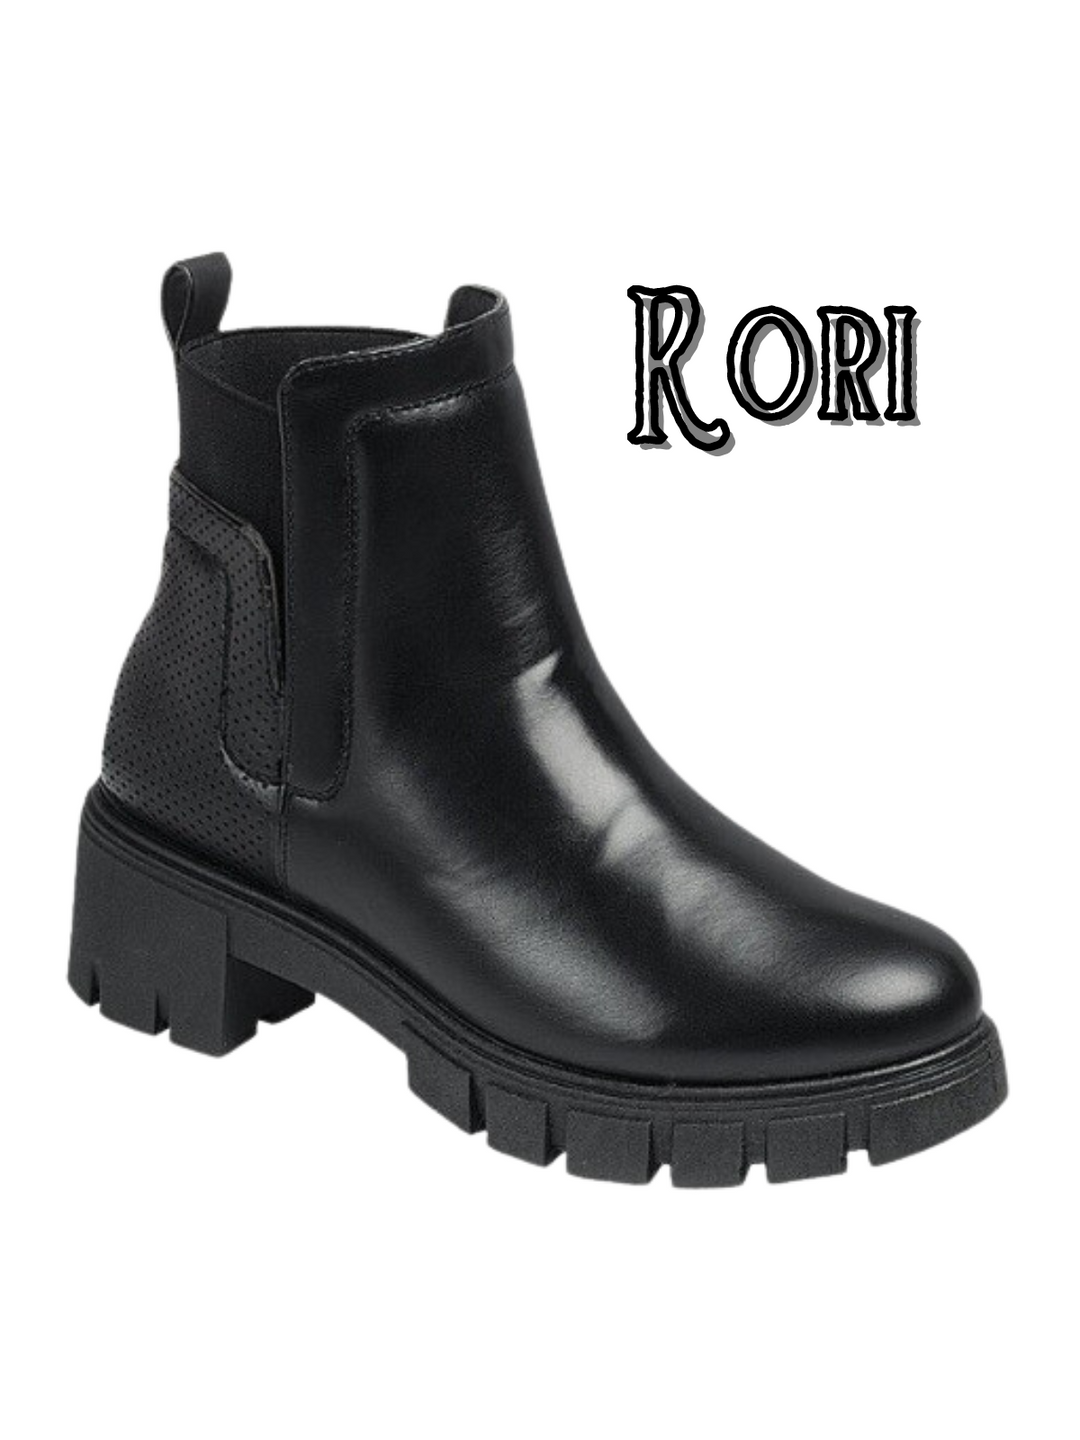 Rori Boots | Pre-Black Friday